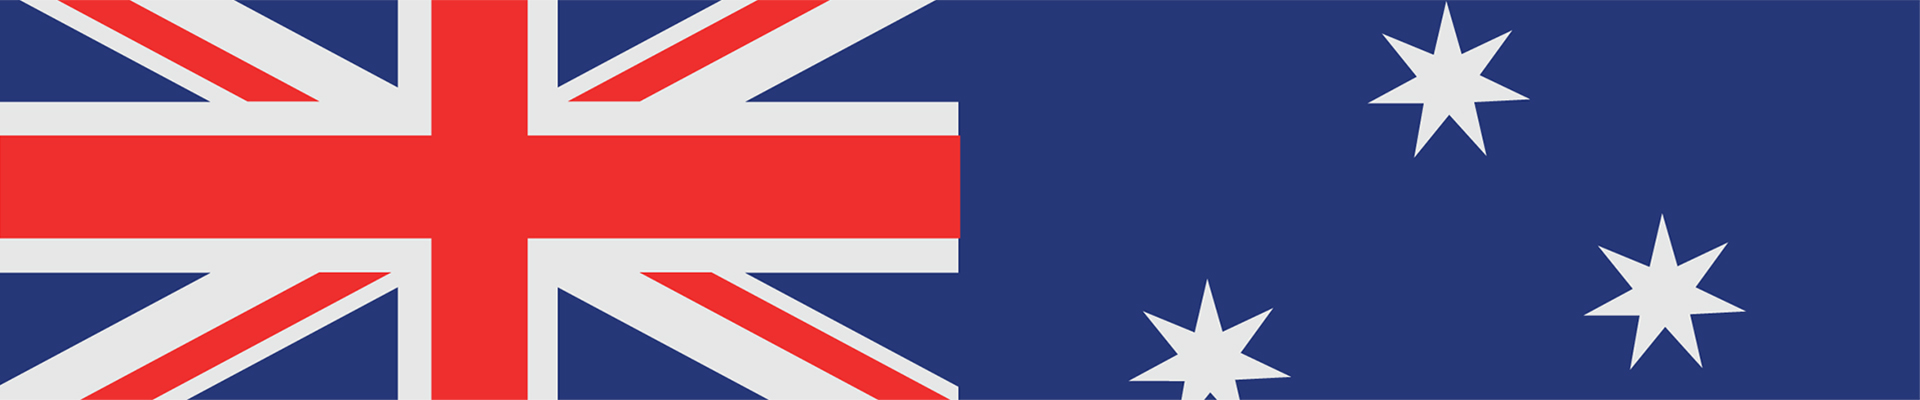 Alcaraz vs Tsitsipas en direct – drapeau Australie